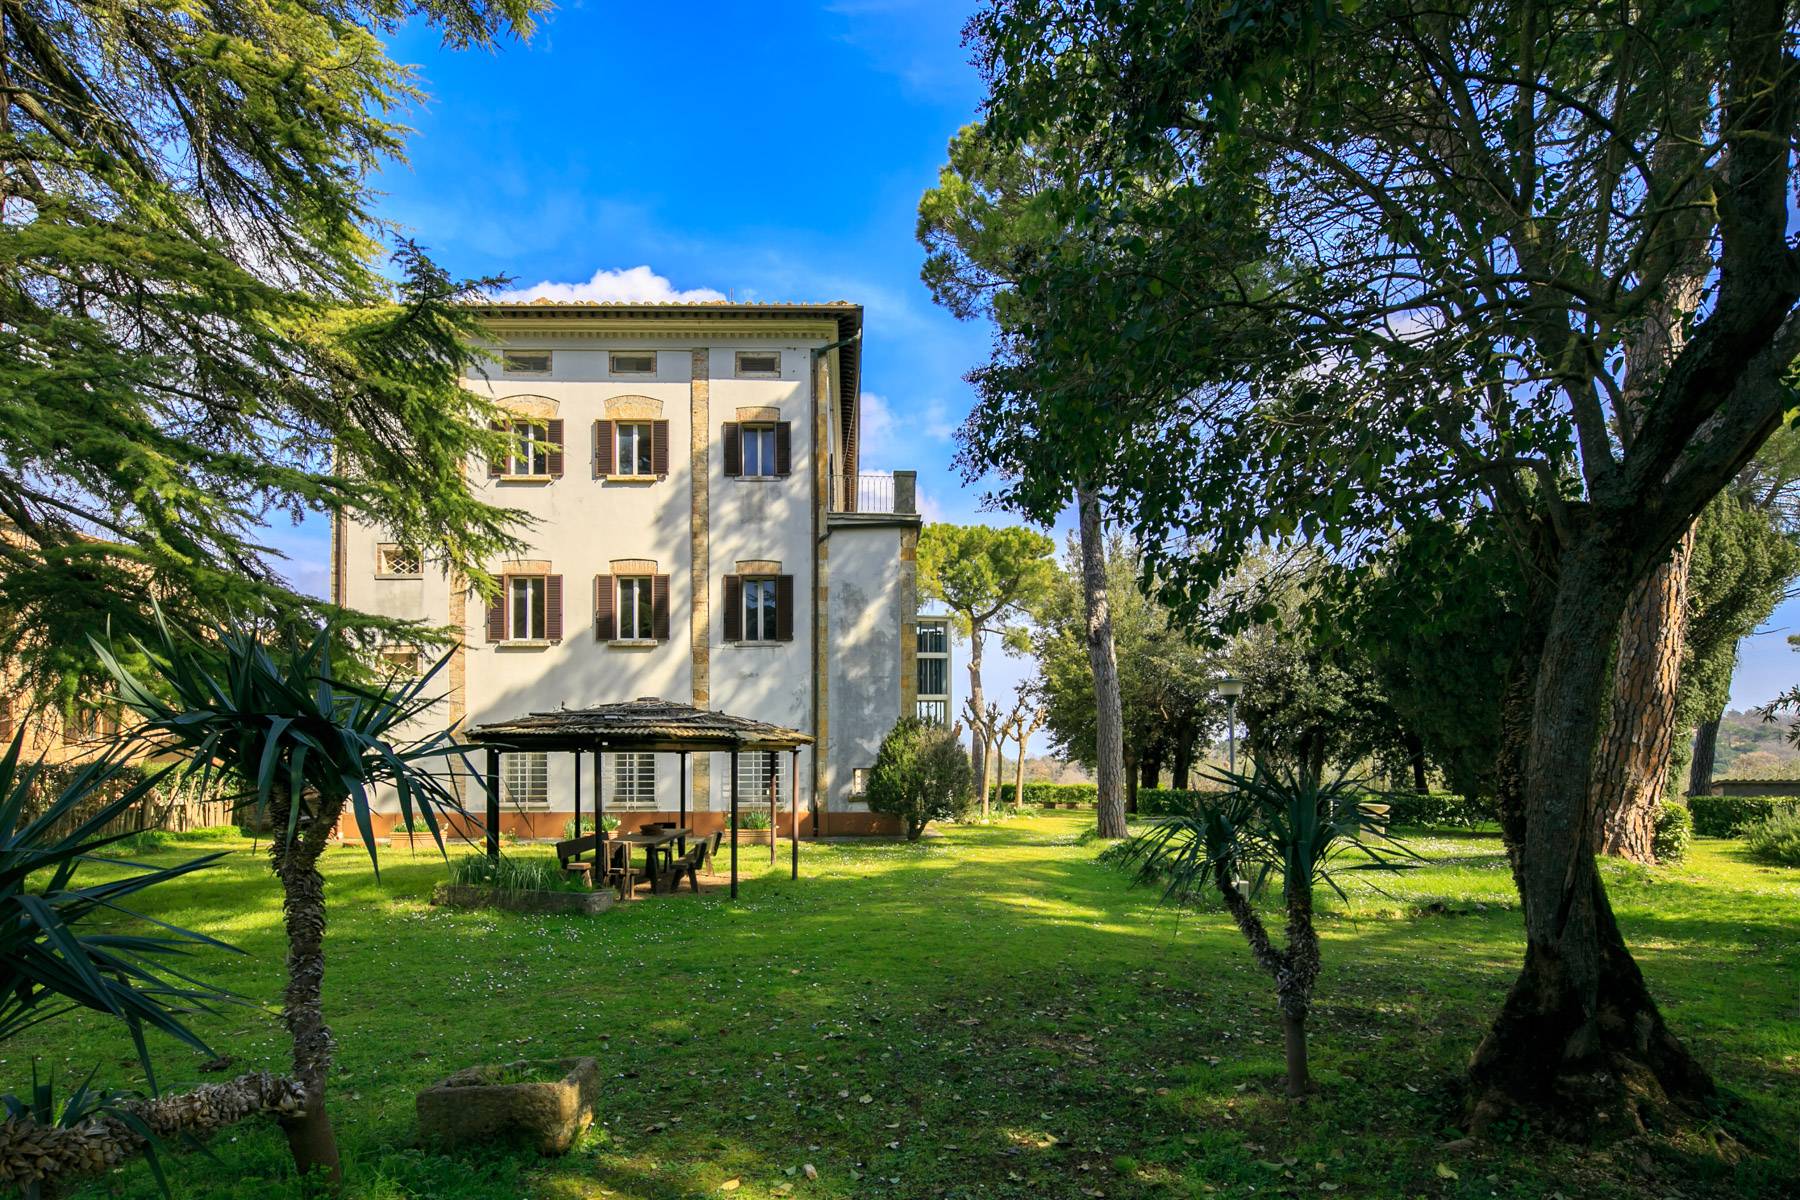 Villa in Vendita a Montepulciano: 5 locali, 2400 mq - Foto 3